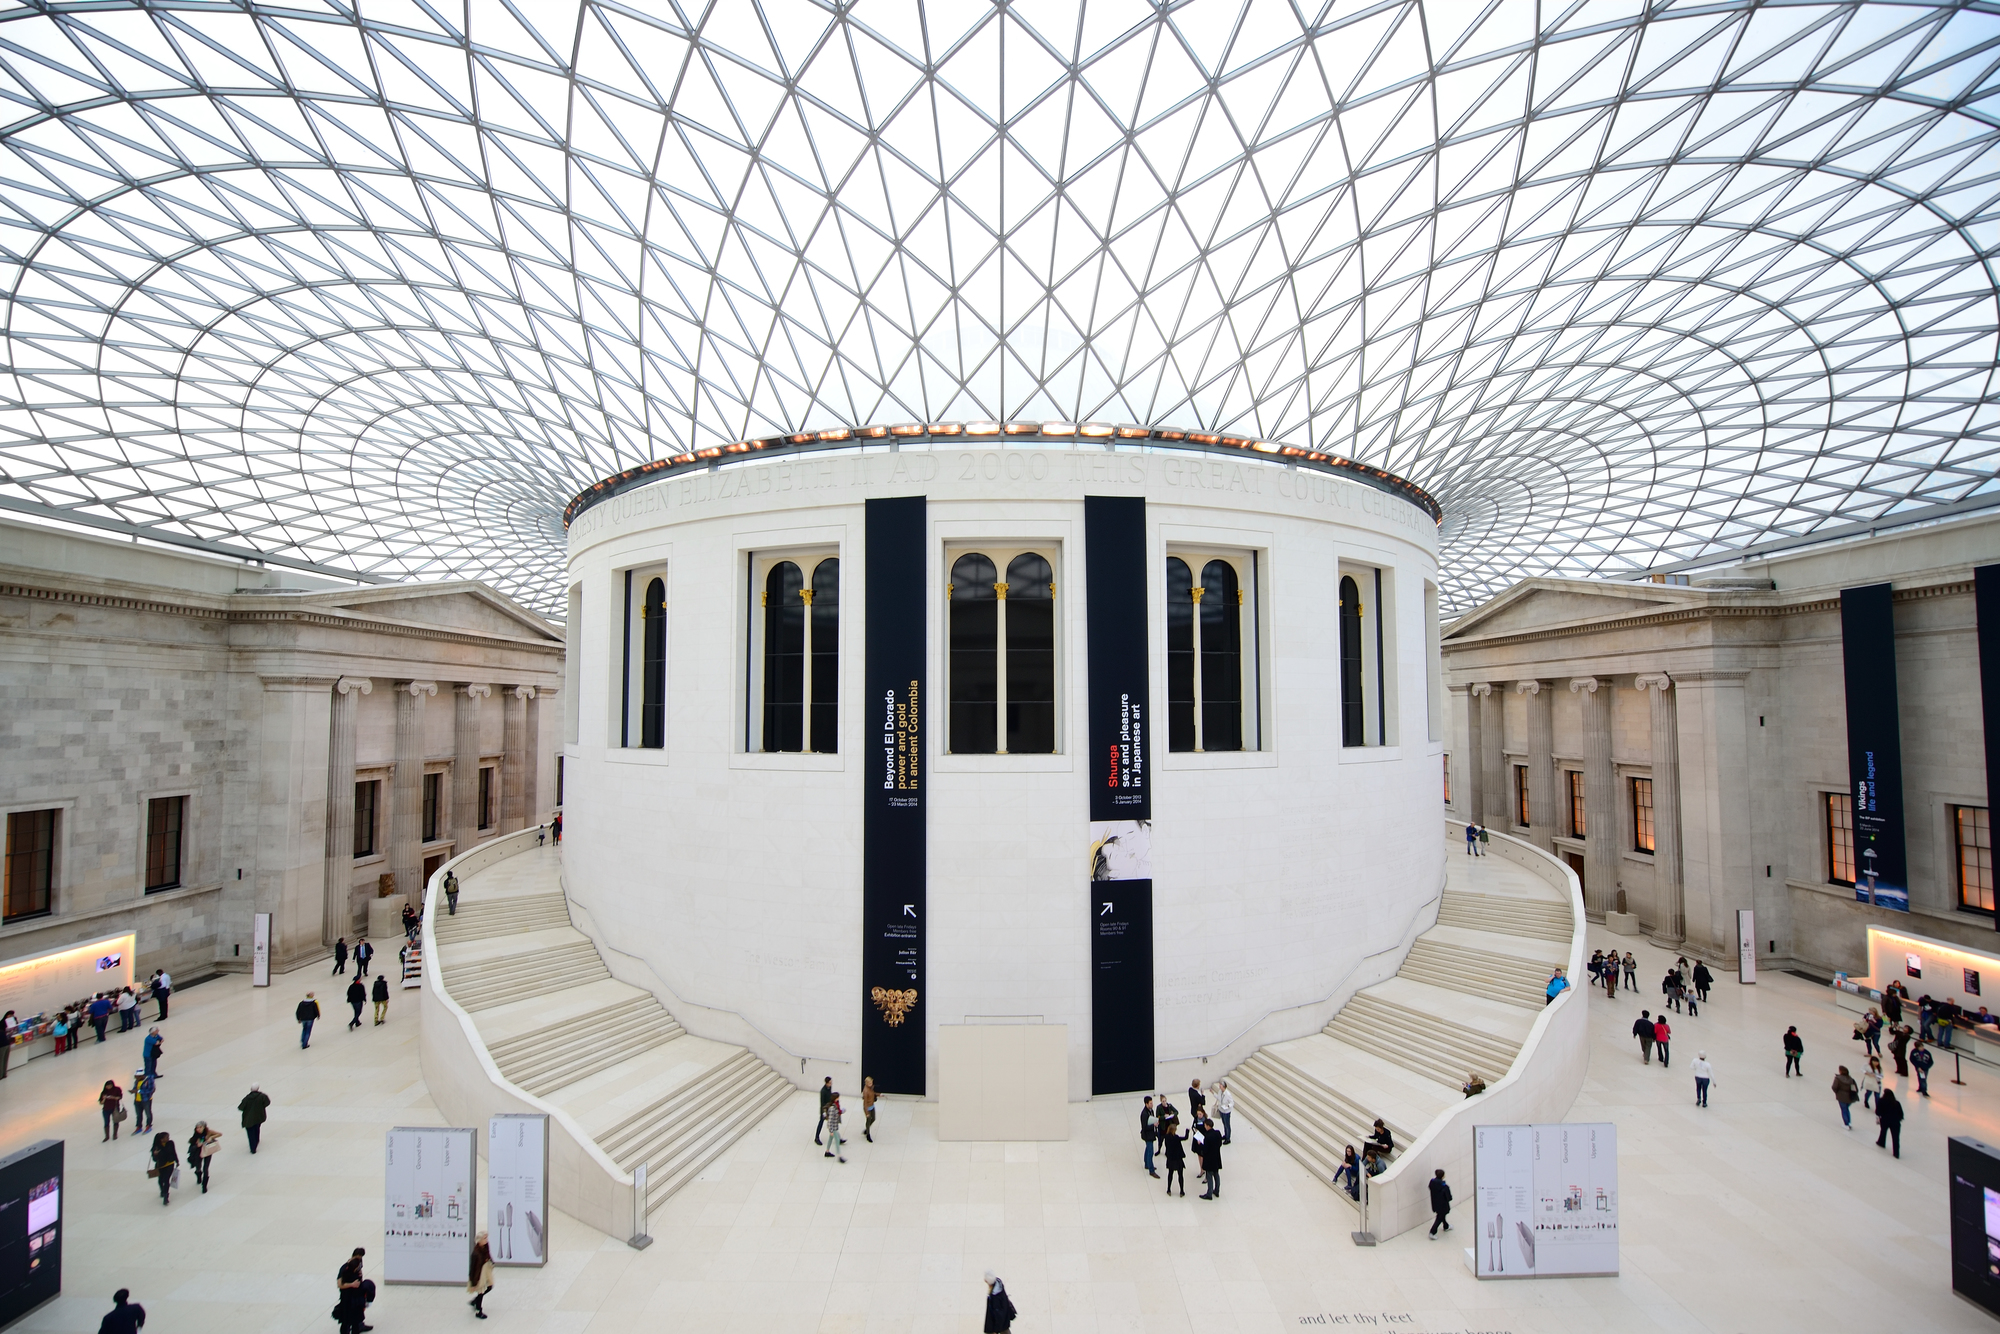 大英博物館の巨大なドーナツ状の広場「グレートコート」 